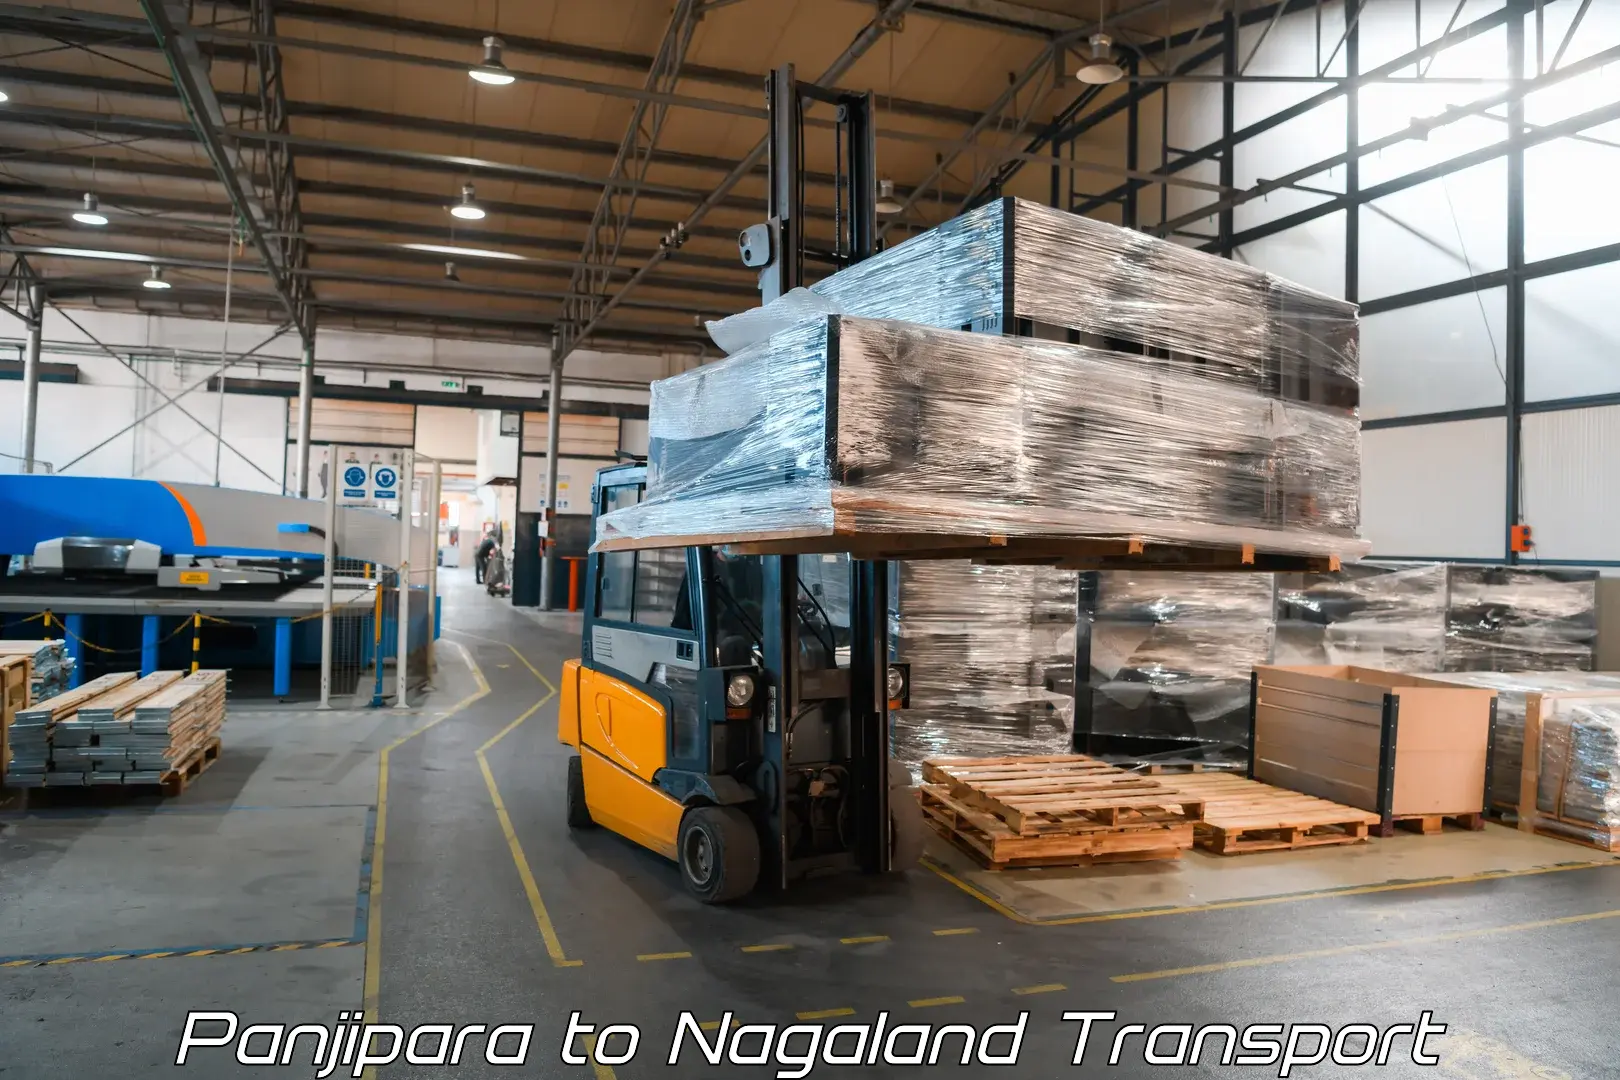 Delivery service Panjipara to Nagaland